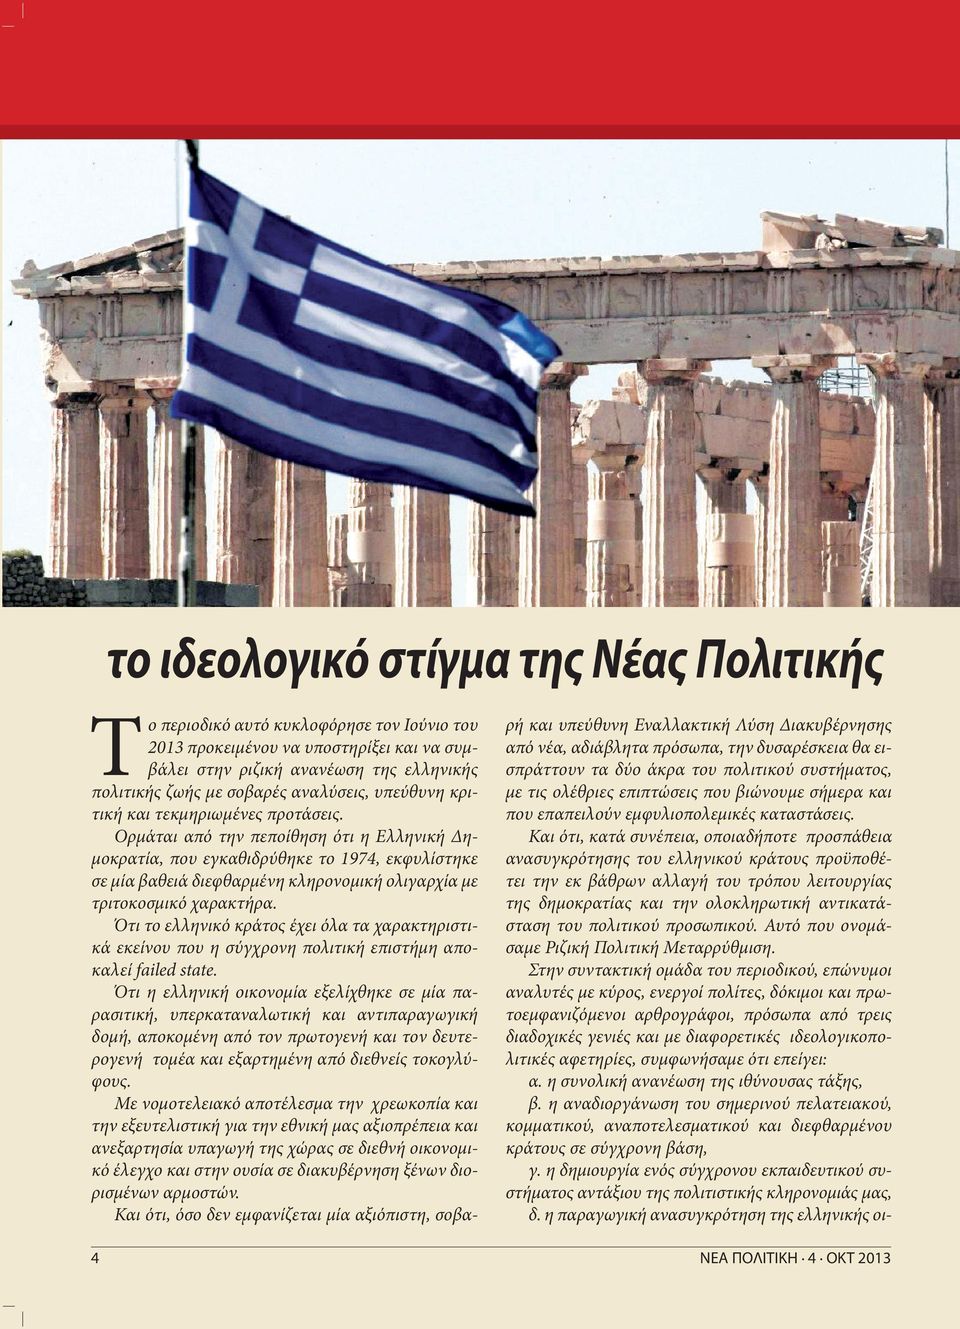 Και ότι, κατά συνέπεια, οποιαδήποτε προσπάθεια ανασυγκρότησης του ελληνικού κράτους προϋποθέτει την εκ βάθρων αλλαγή του τρόπου λειτουργίας της δημοκρατίας και την ολοκληρωτική αντικατάσταση του